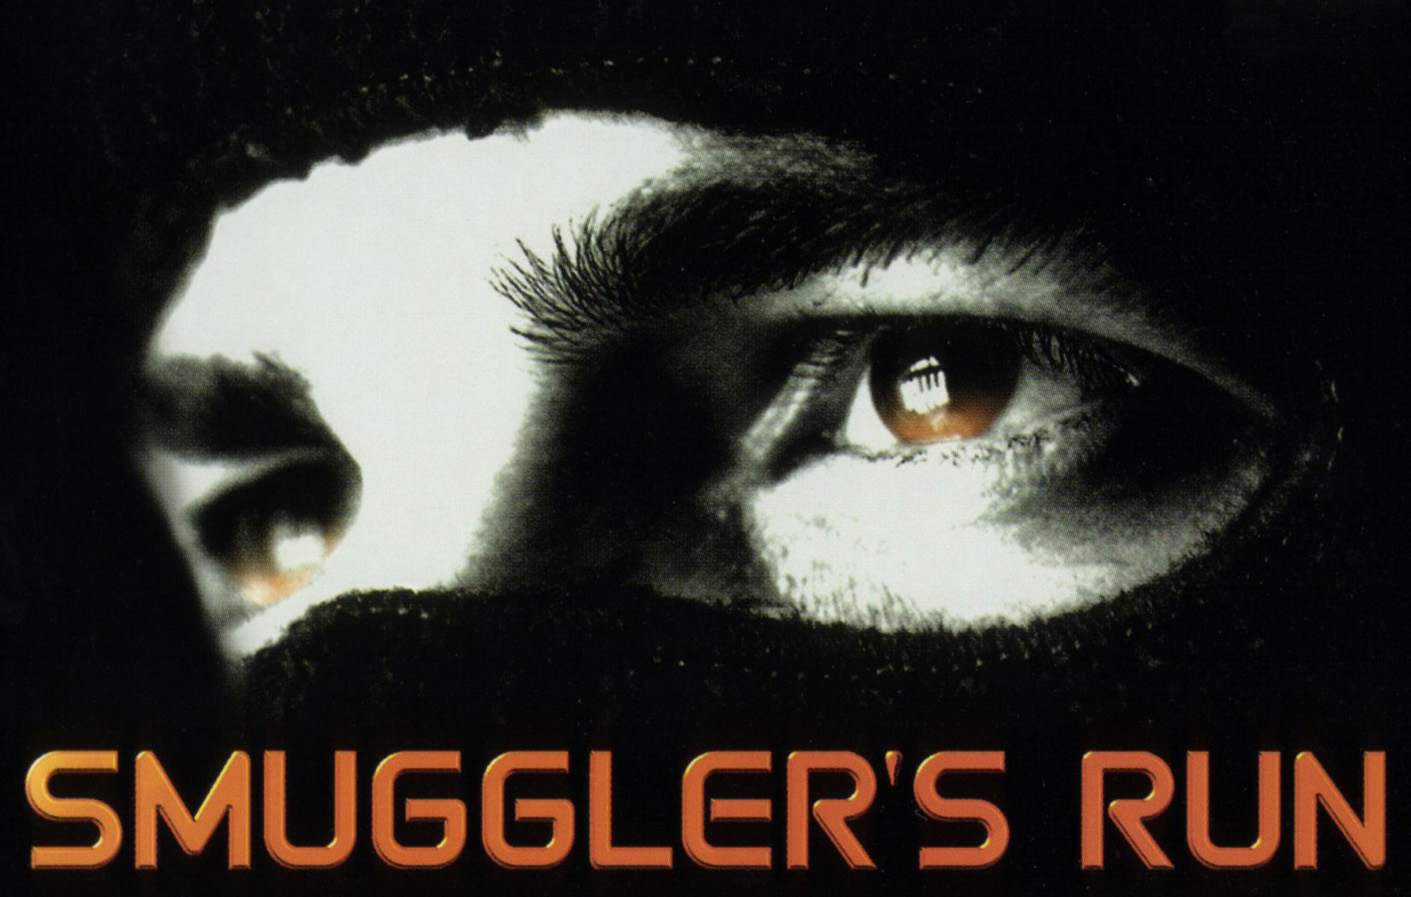 Smuggler's Run, GTA Wiki